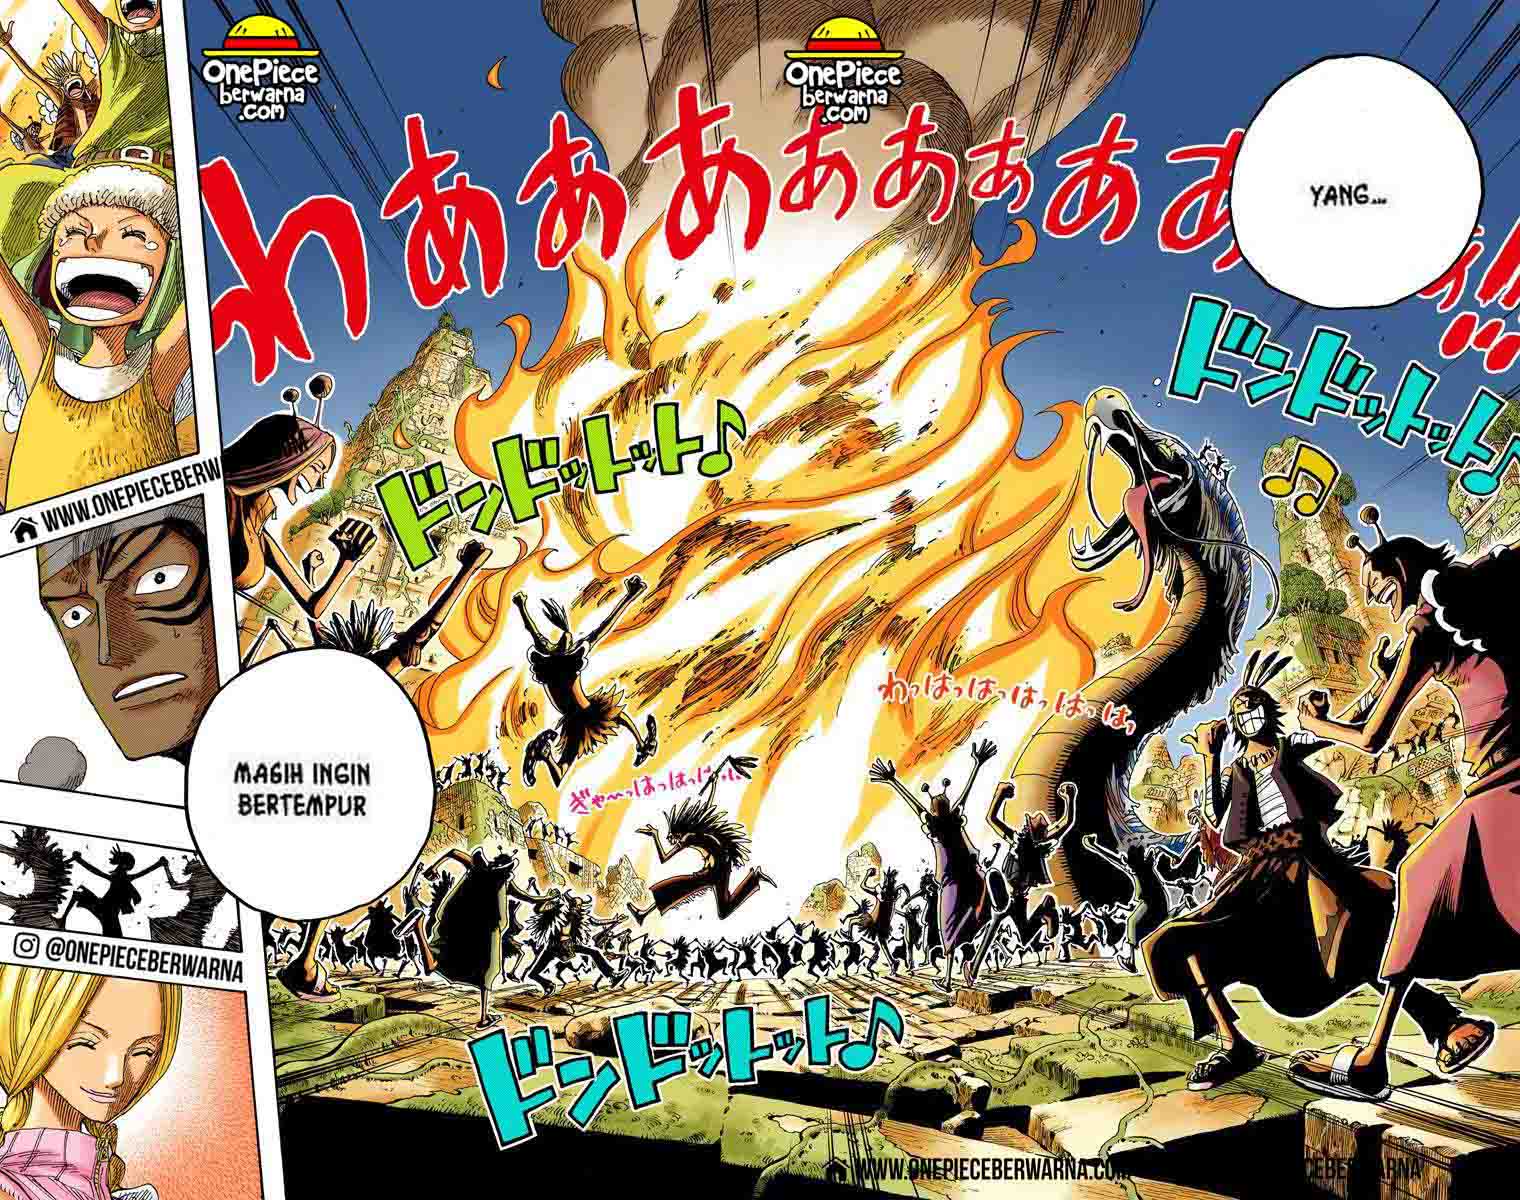 One Piece Berwarna Chapter 300